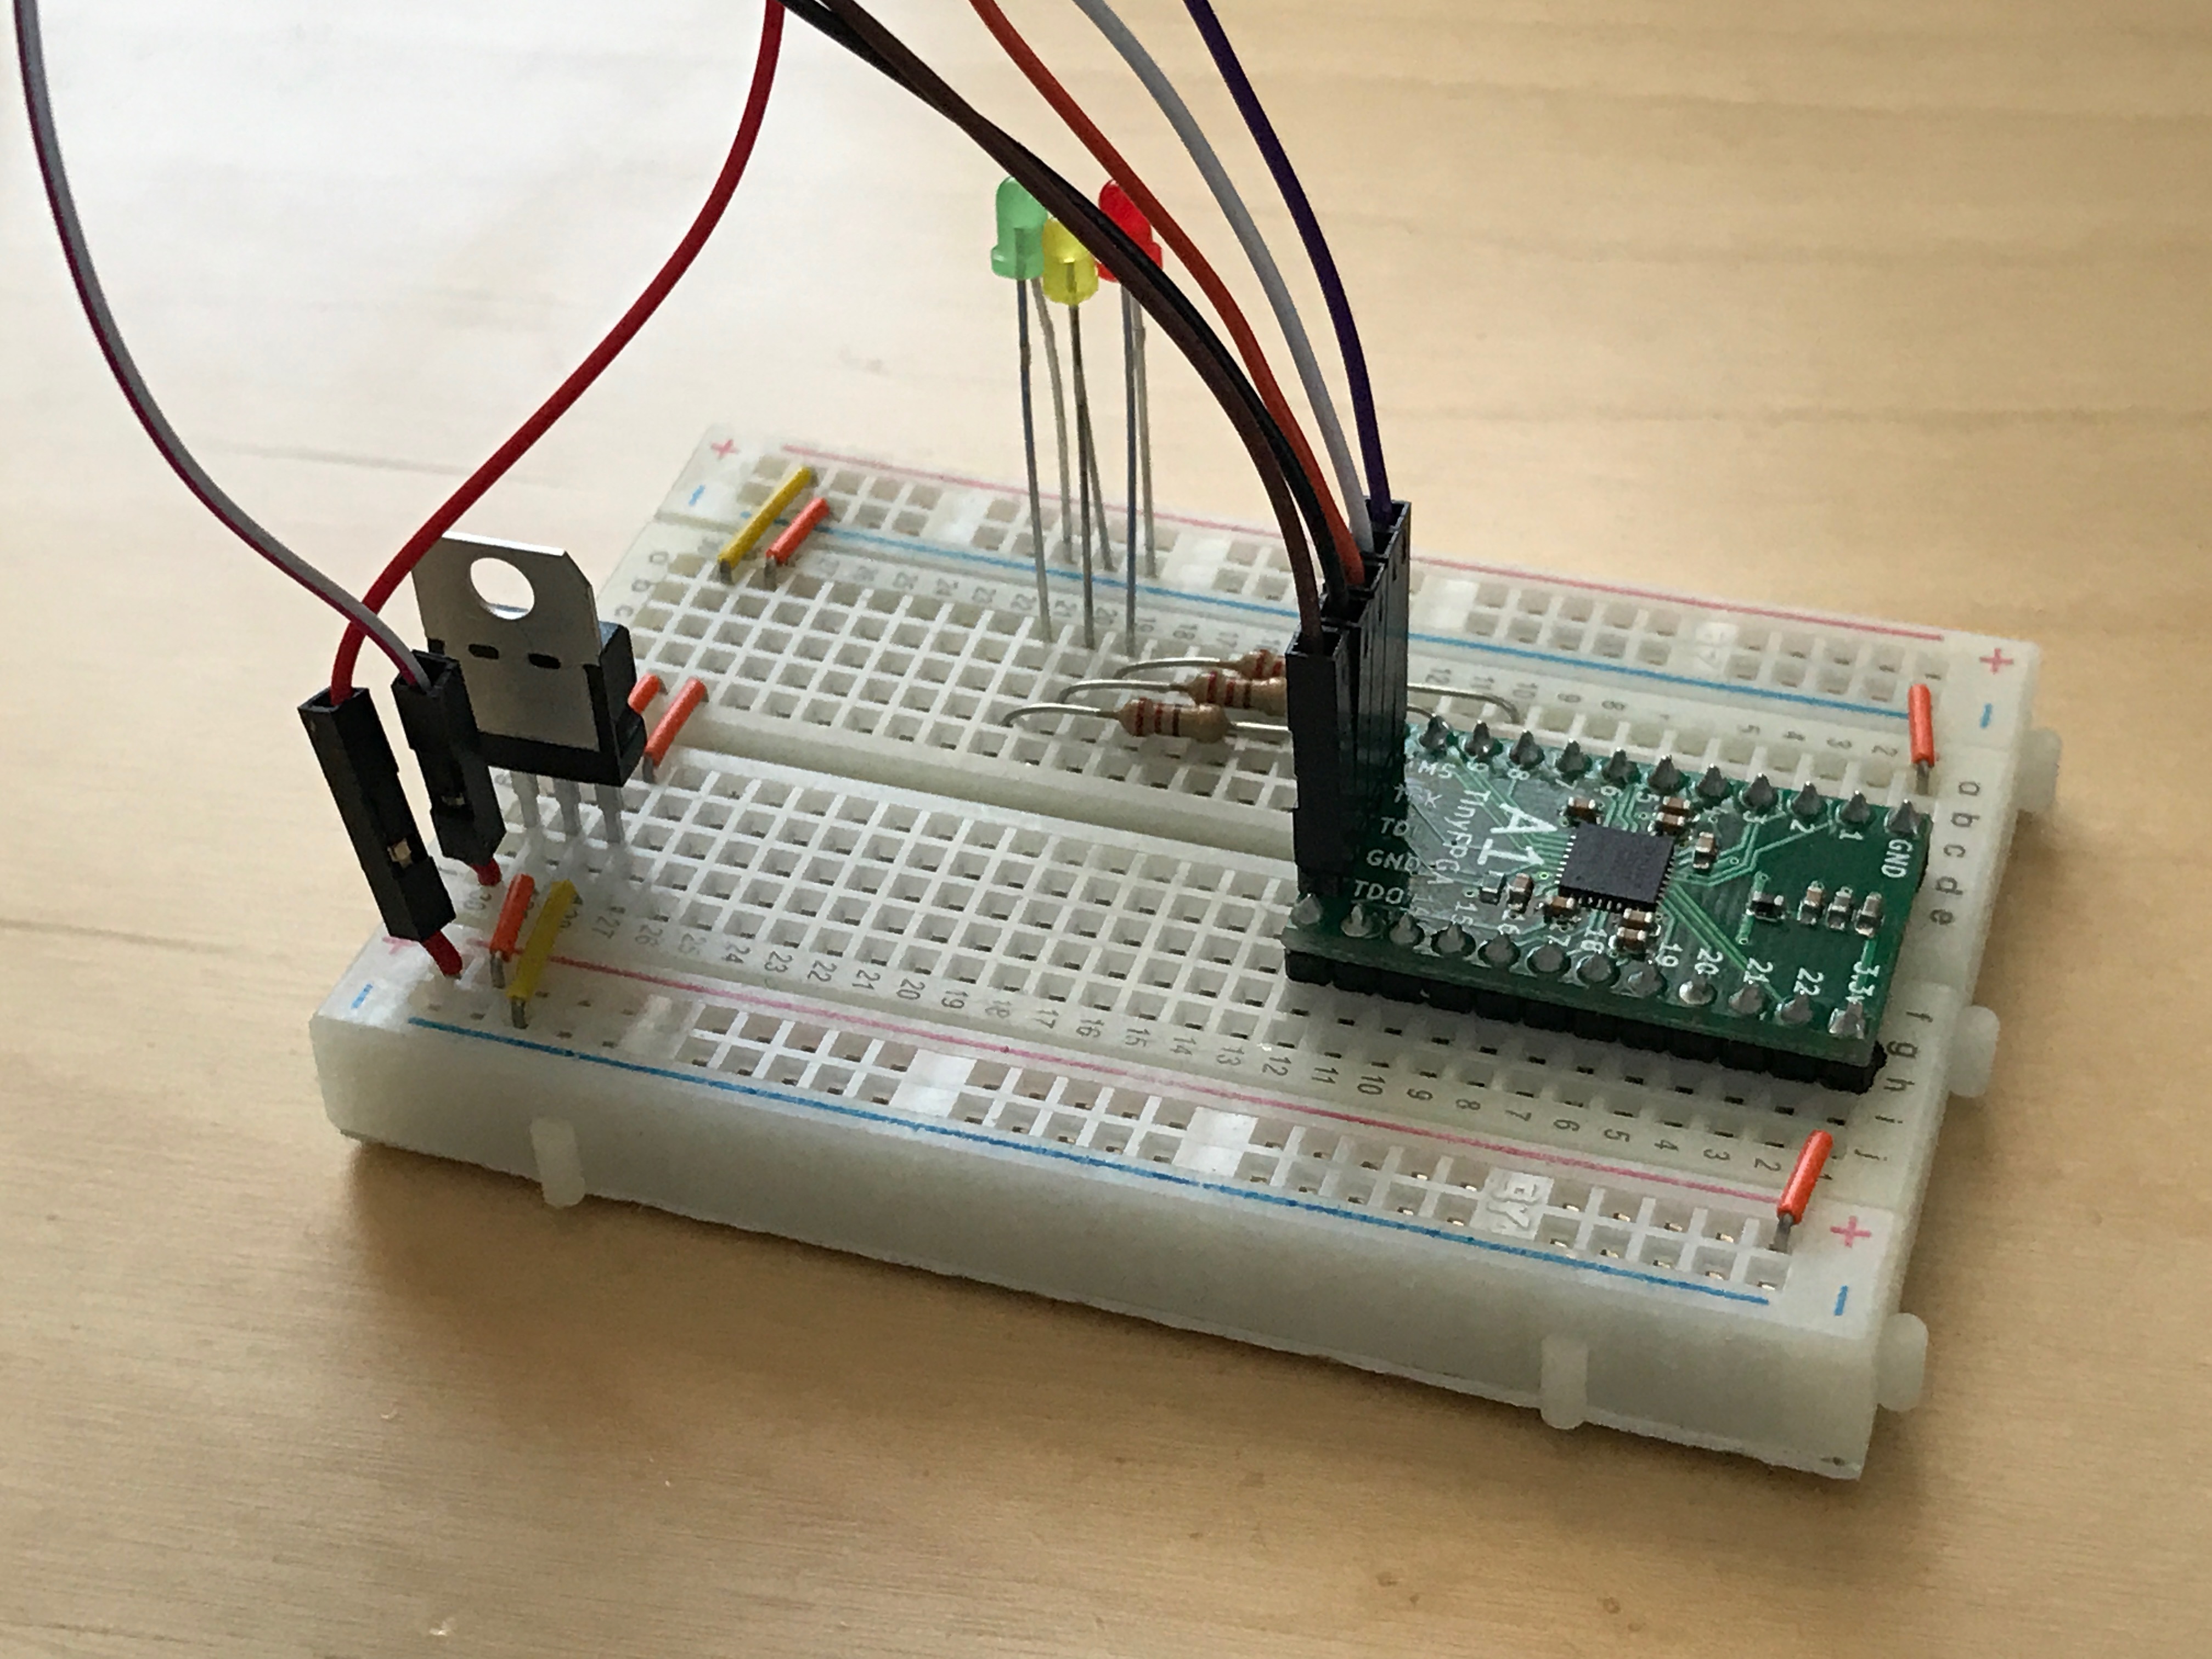 TinyFPGA blinker circuit with JTAG programmer